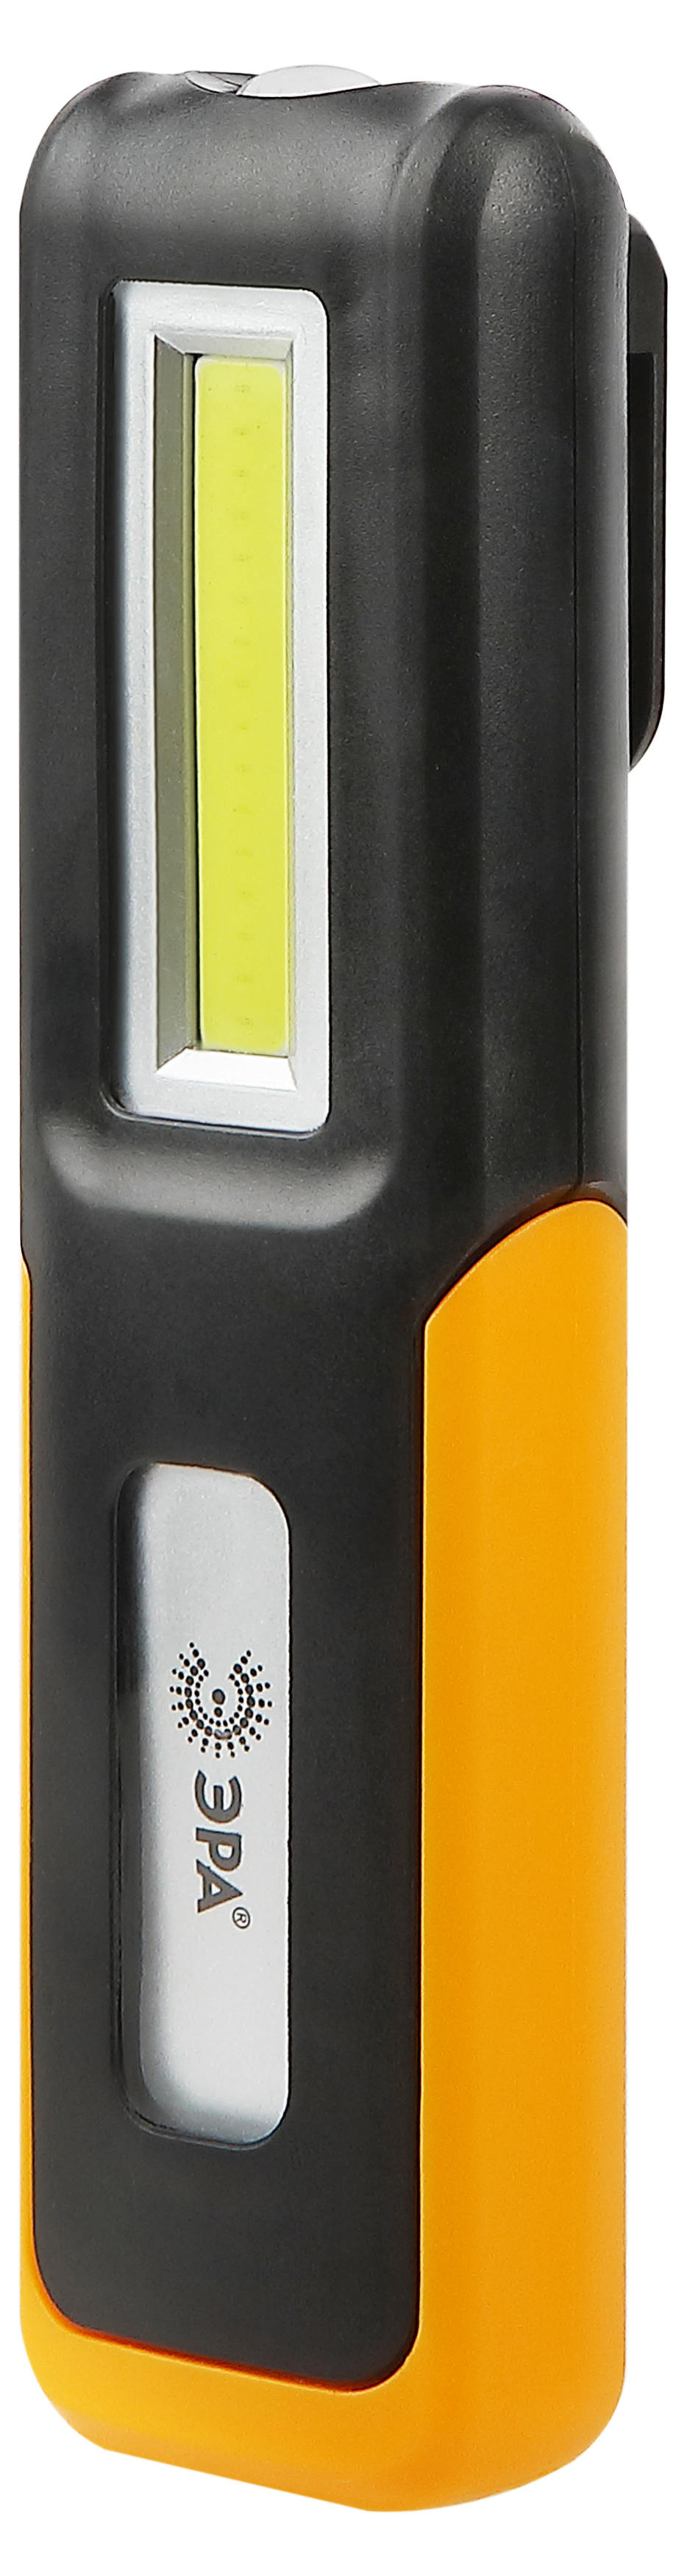 Фонарь ЭРА RA-803 аккумуляторный Практик 6Вт 400Лм крючок, клипса-держатель, магнит, 2 режима, miscr